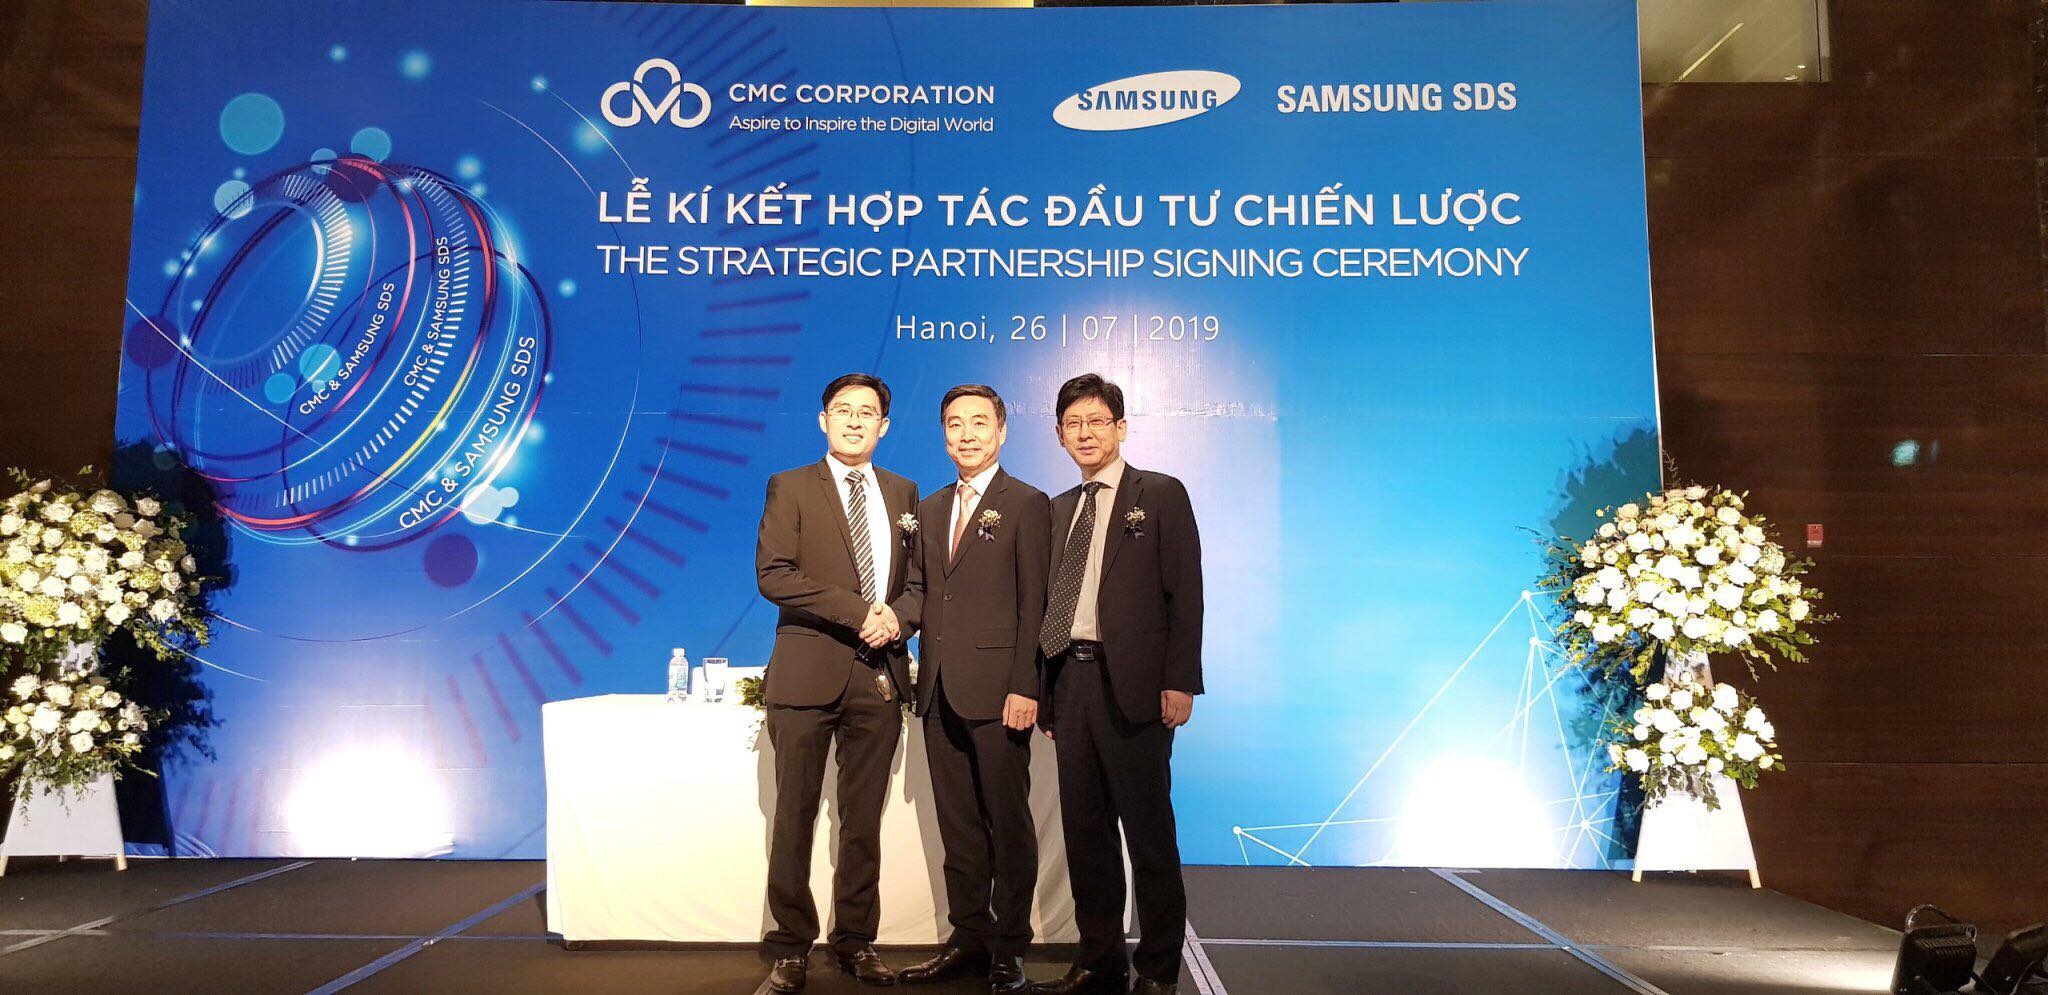 ABF chúc mừng sự hợp tác thành công giữa Tập đoàn công nghệ CMC với Công ty CNTT Samsung SDS